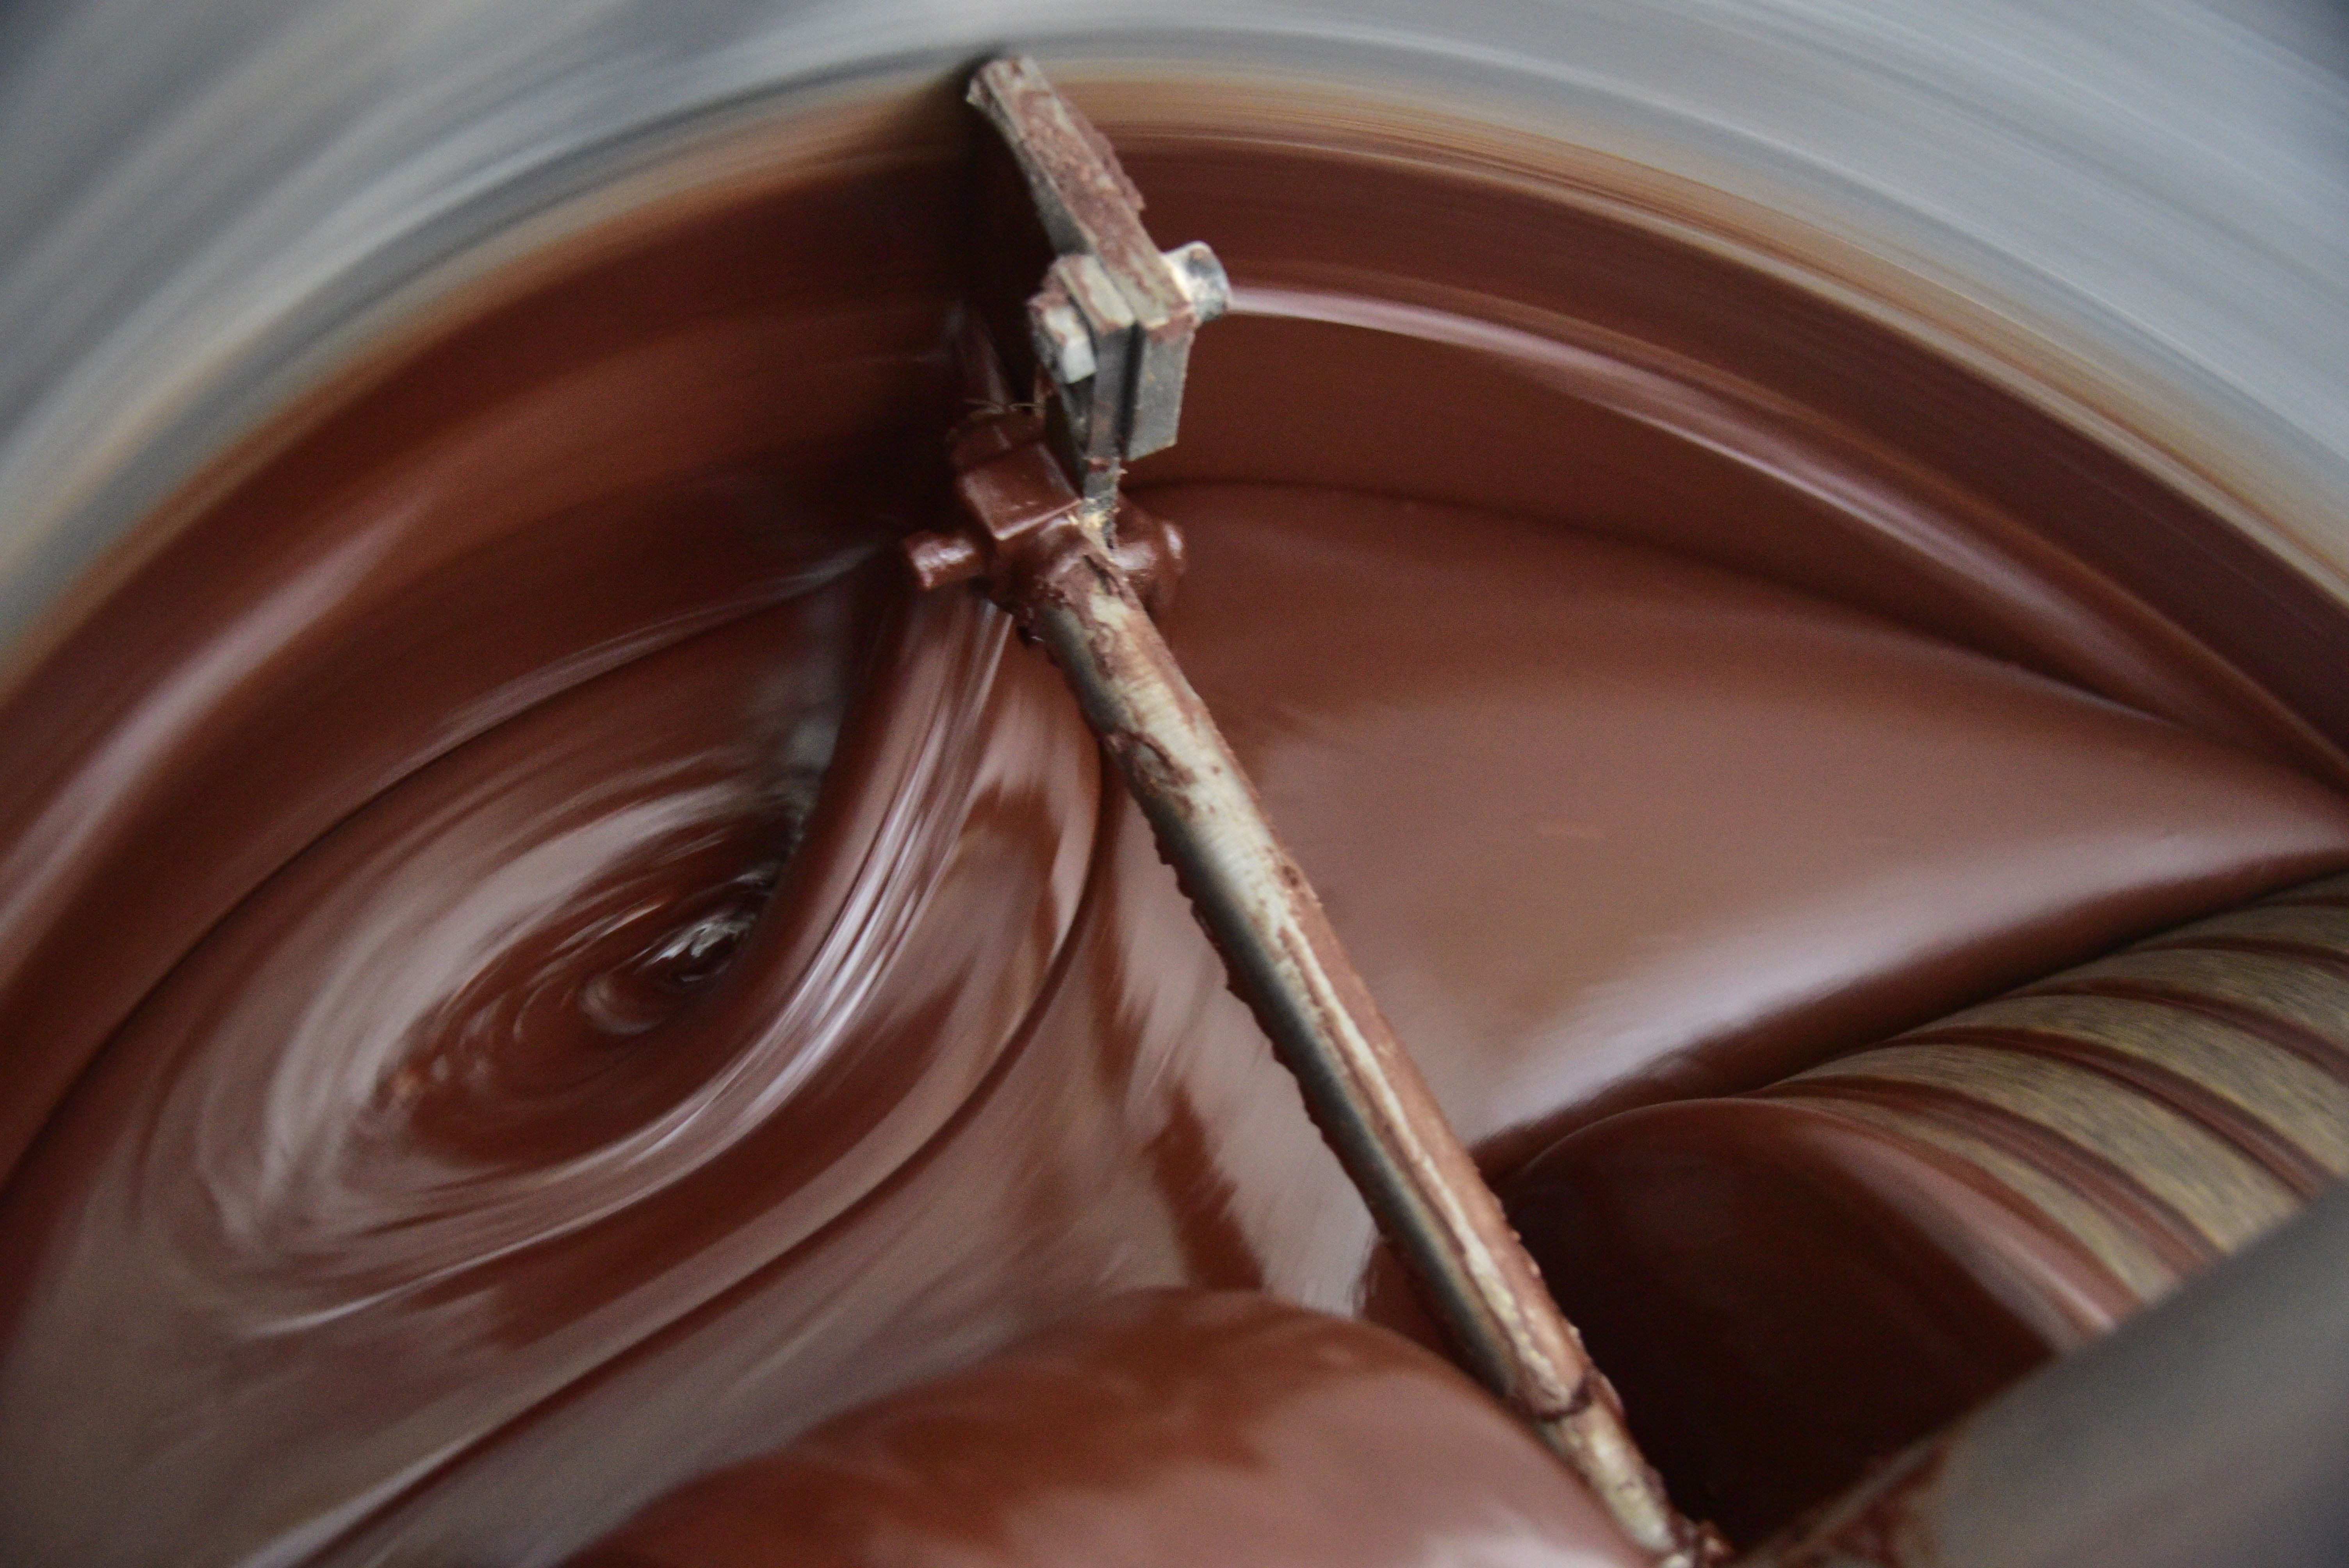 Посетителям расскажут о том, как сварить шоколад из какао-бобов. Фото: Антон Гердо